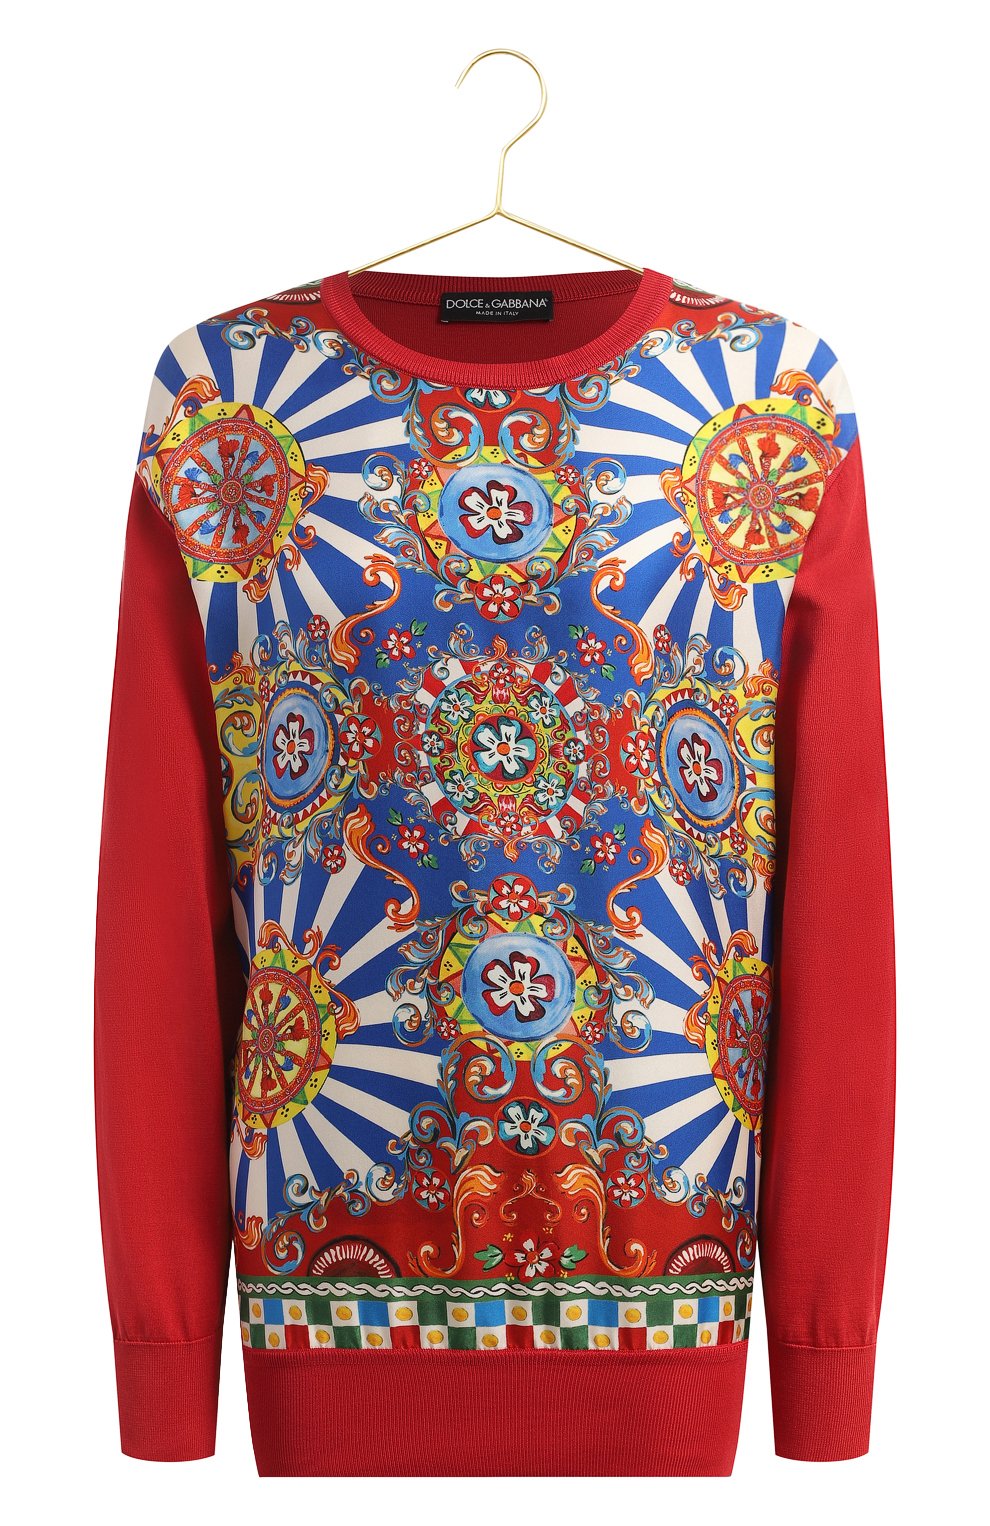 Шелковый пуловер | Dolce & Gabbana | Красный - 1